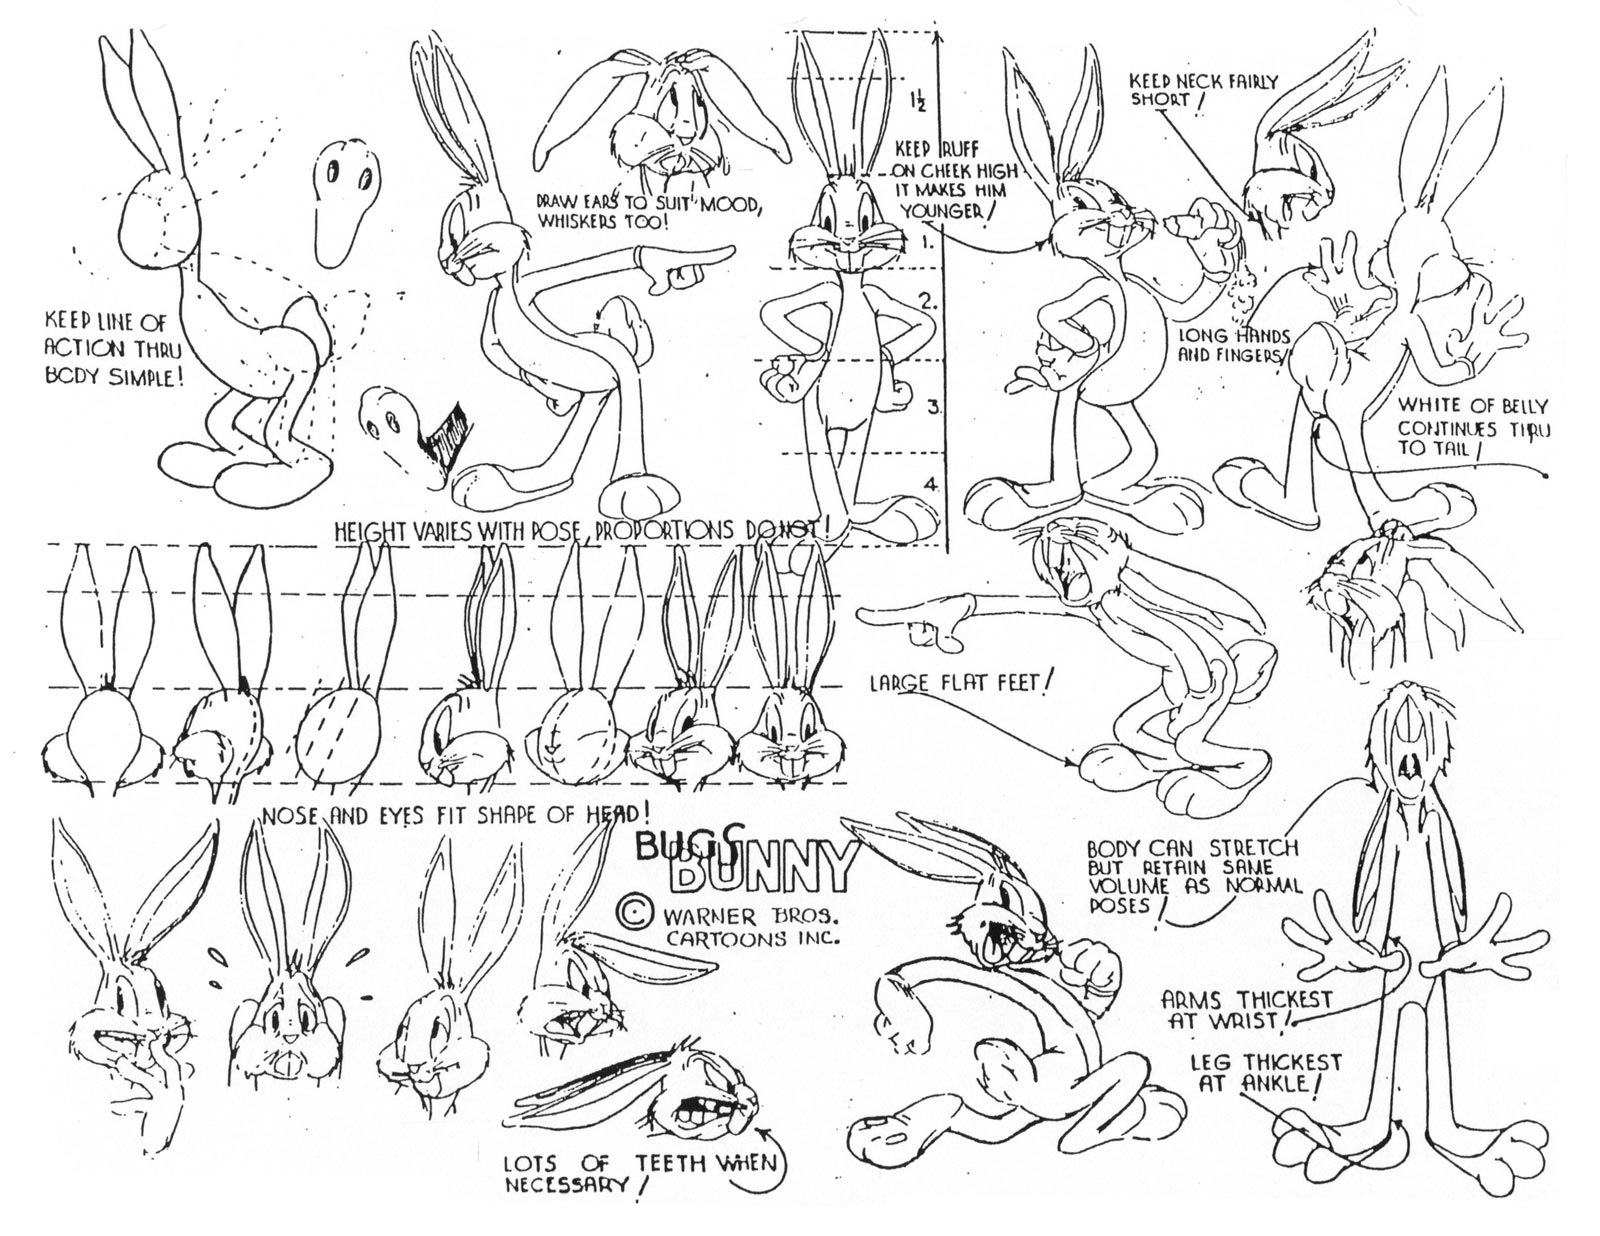 Art of Looney Tunes